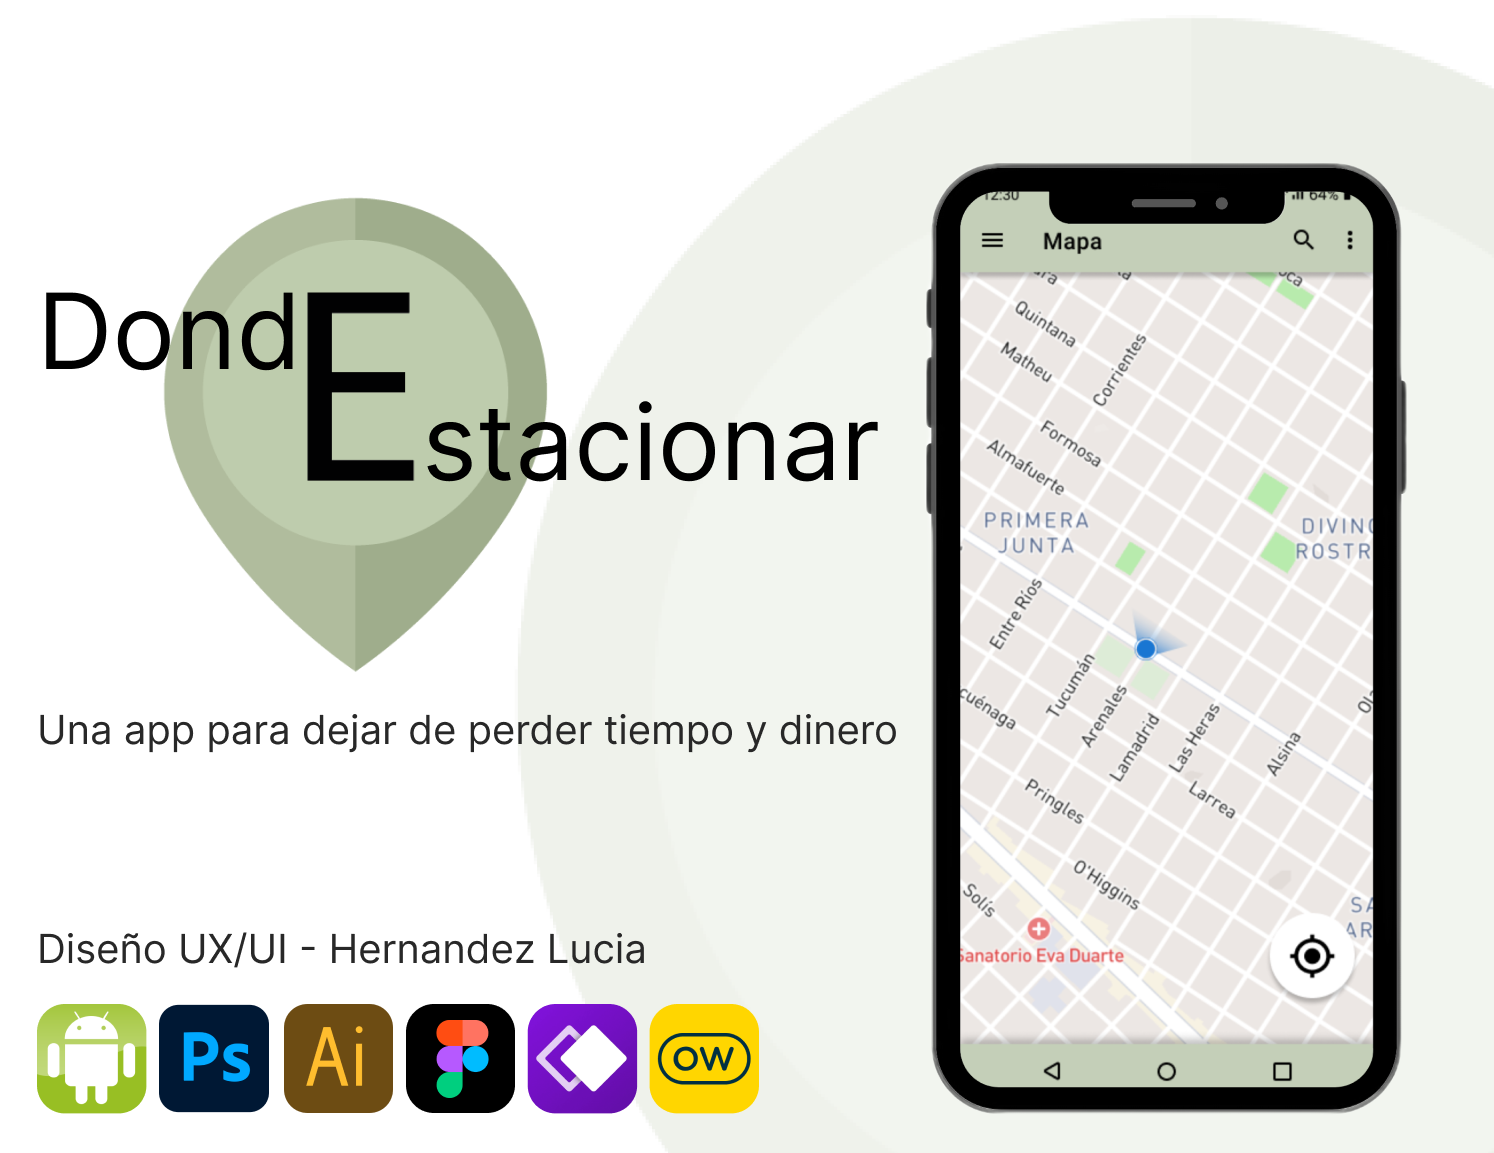 Donde
stacionar

Una app para dejar de perder tiempo y dinero

Disefio UX/Ul - Hernandez Lucia

ROBO: